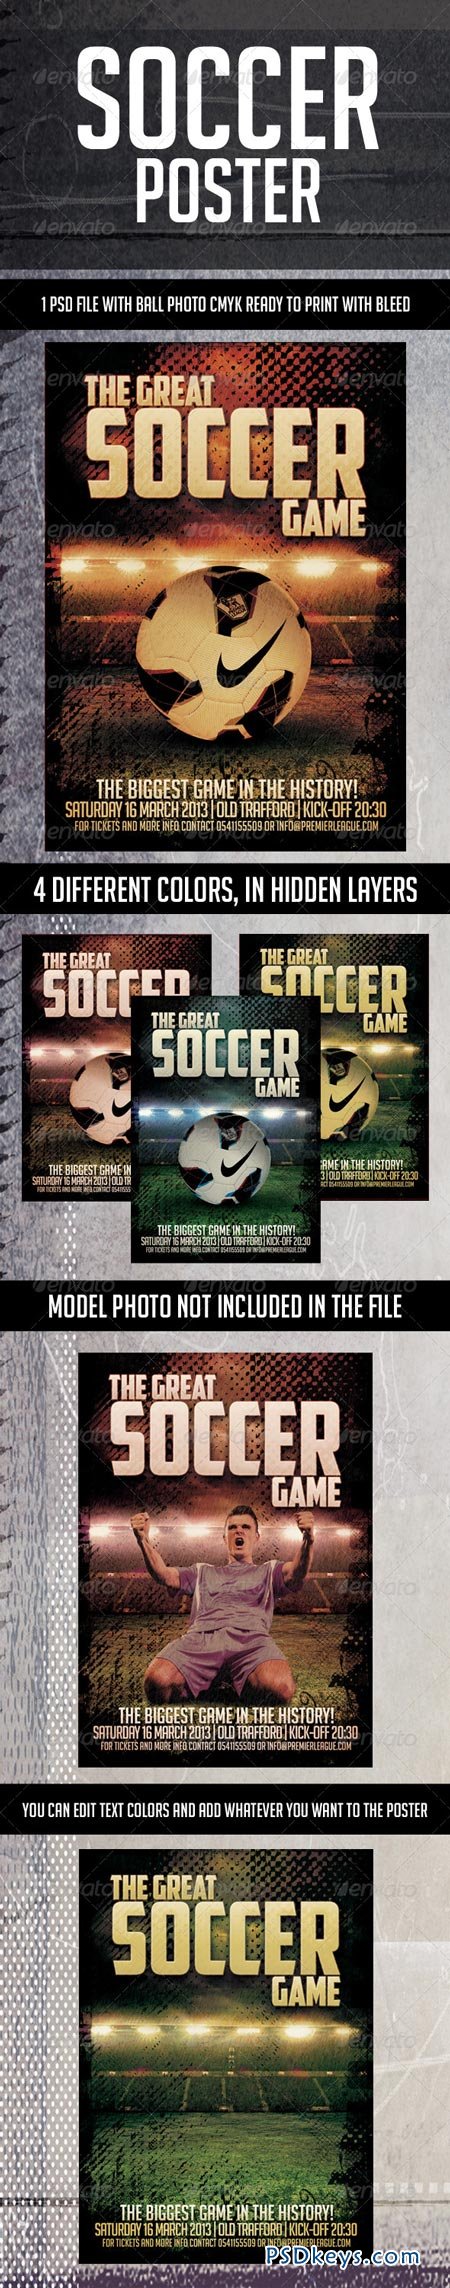 Soccer Poster 4457848